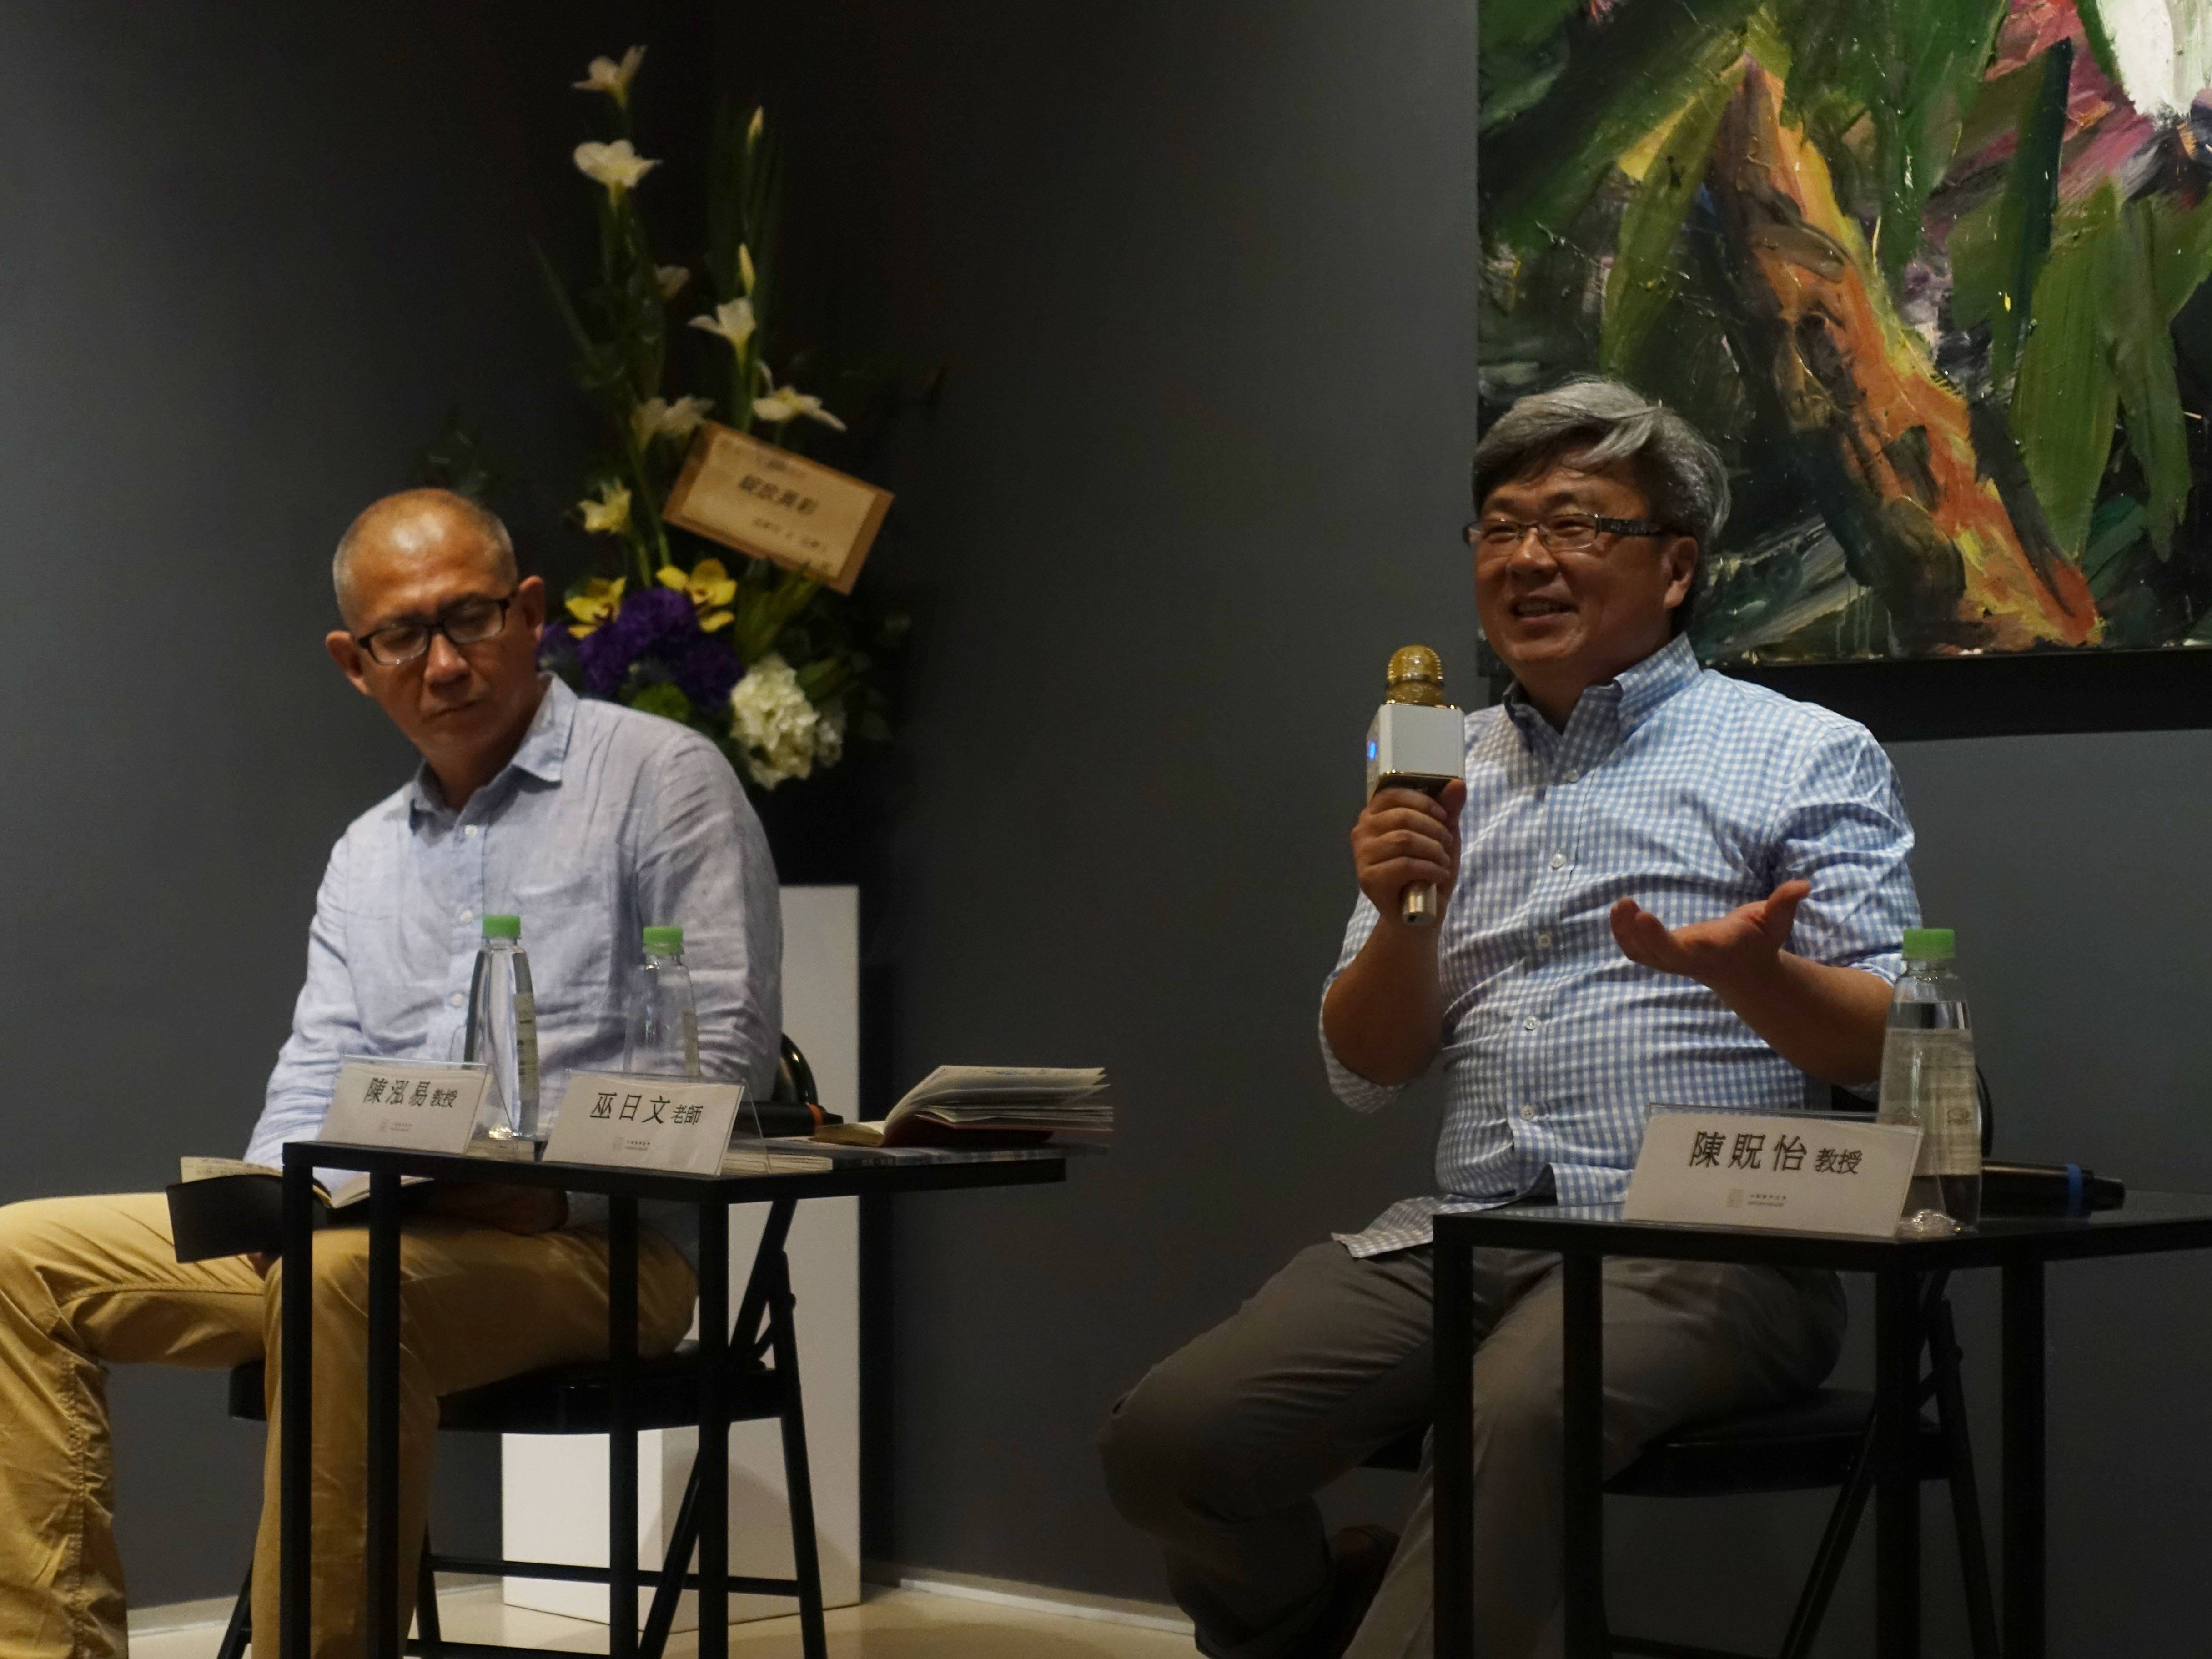 藝術家巫日文(右)與南藝大創作理論研究所陳泓易教授(左)進行座談會交流。